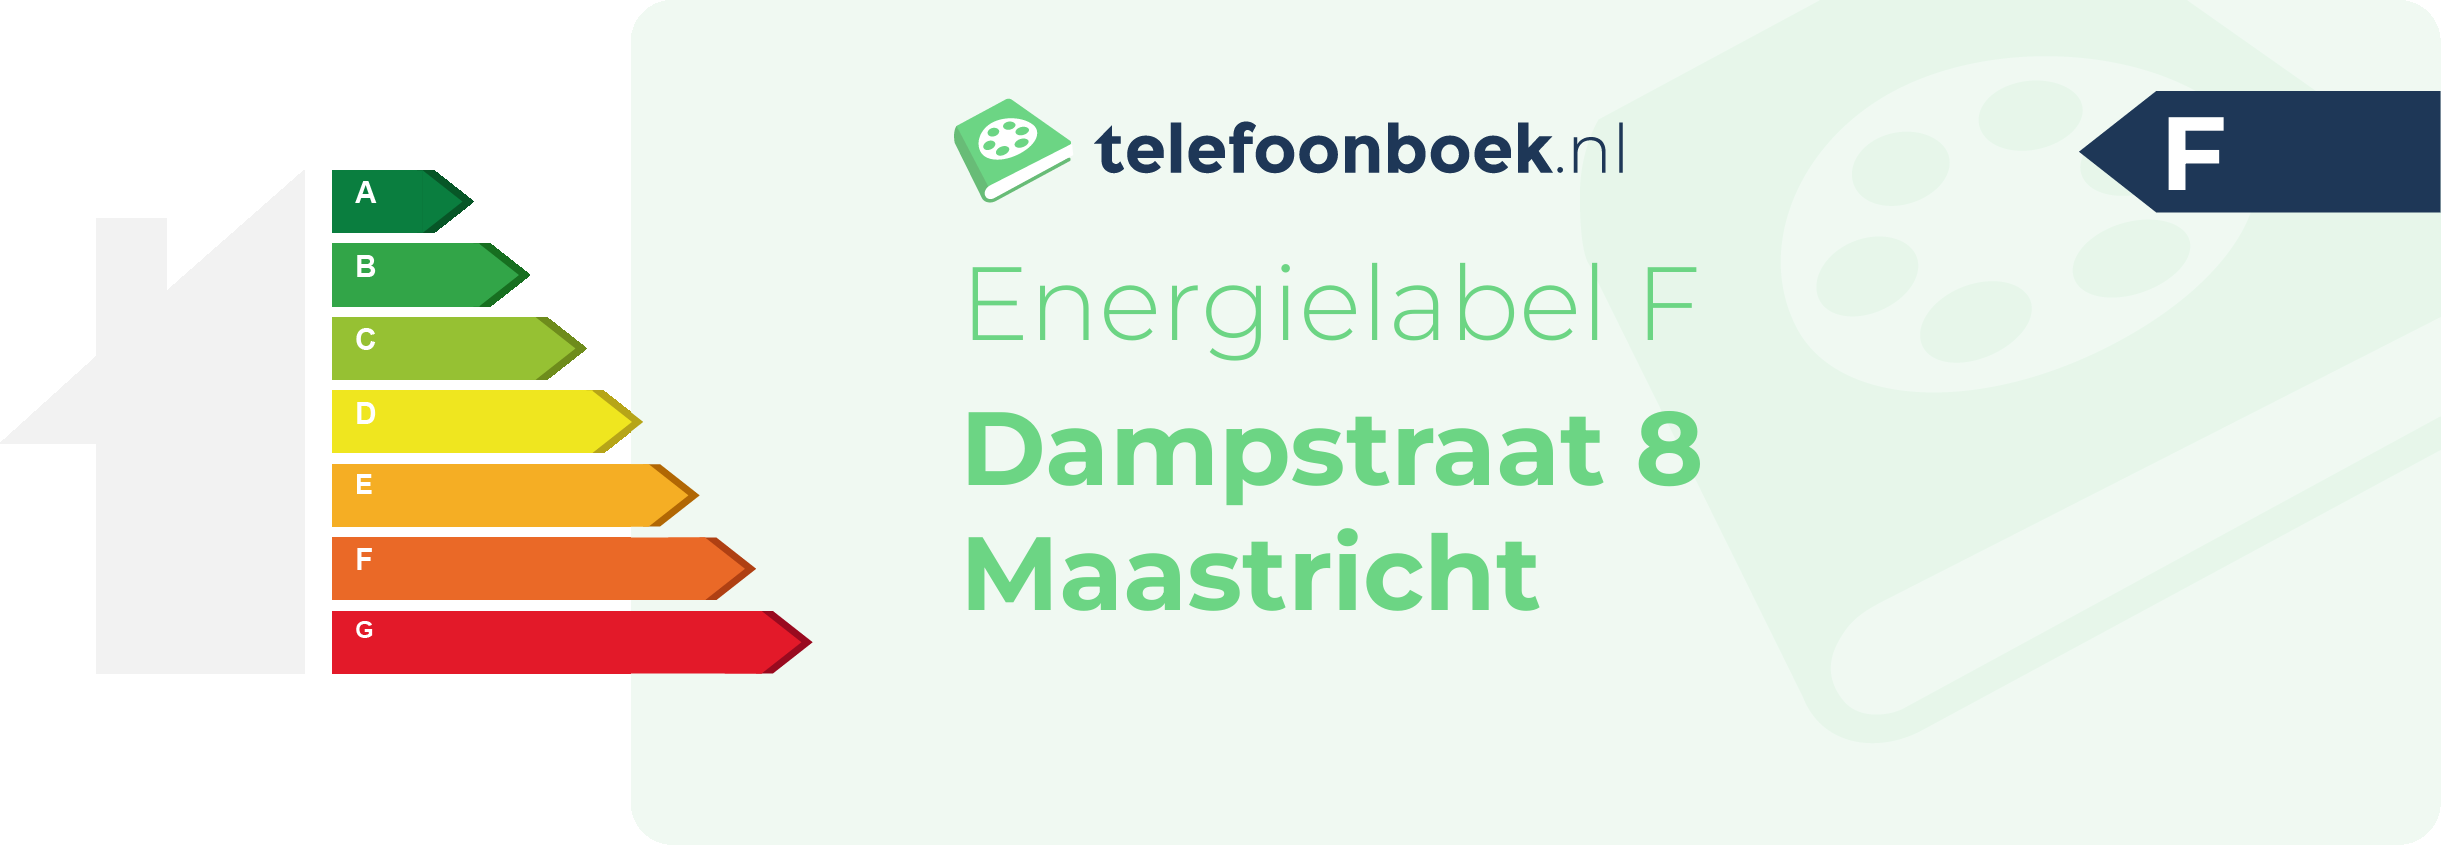 Energielabel Dampstraat 8 Maastricht